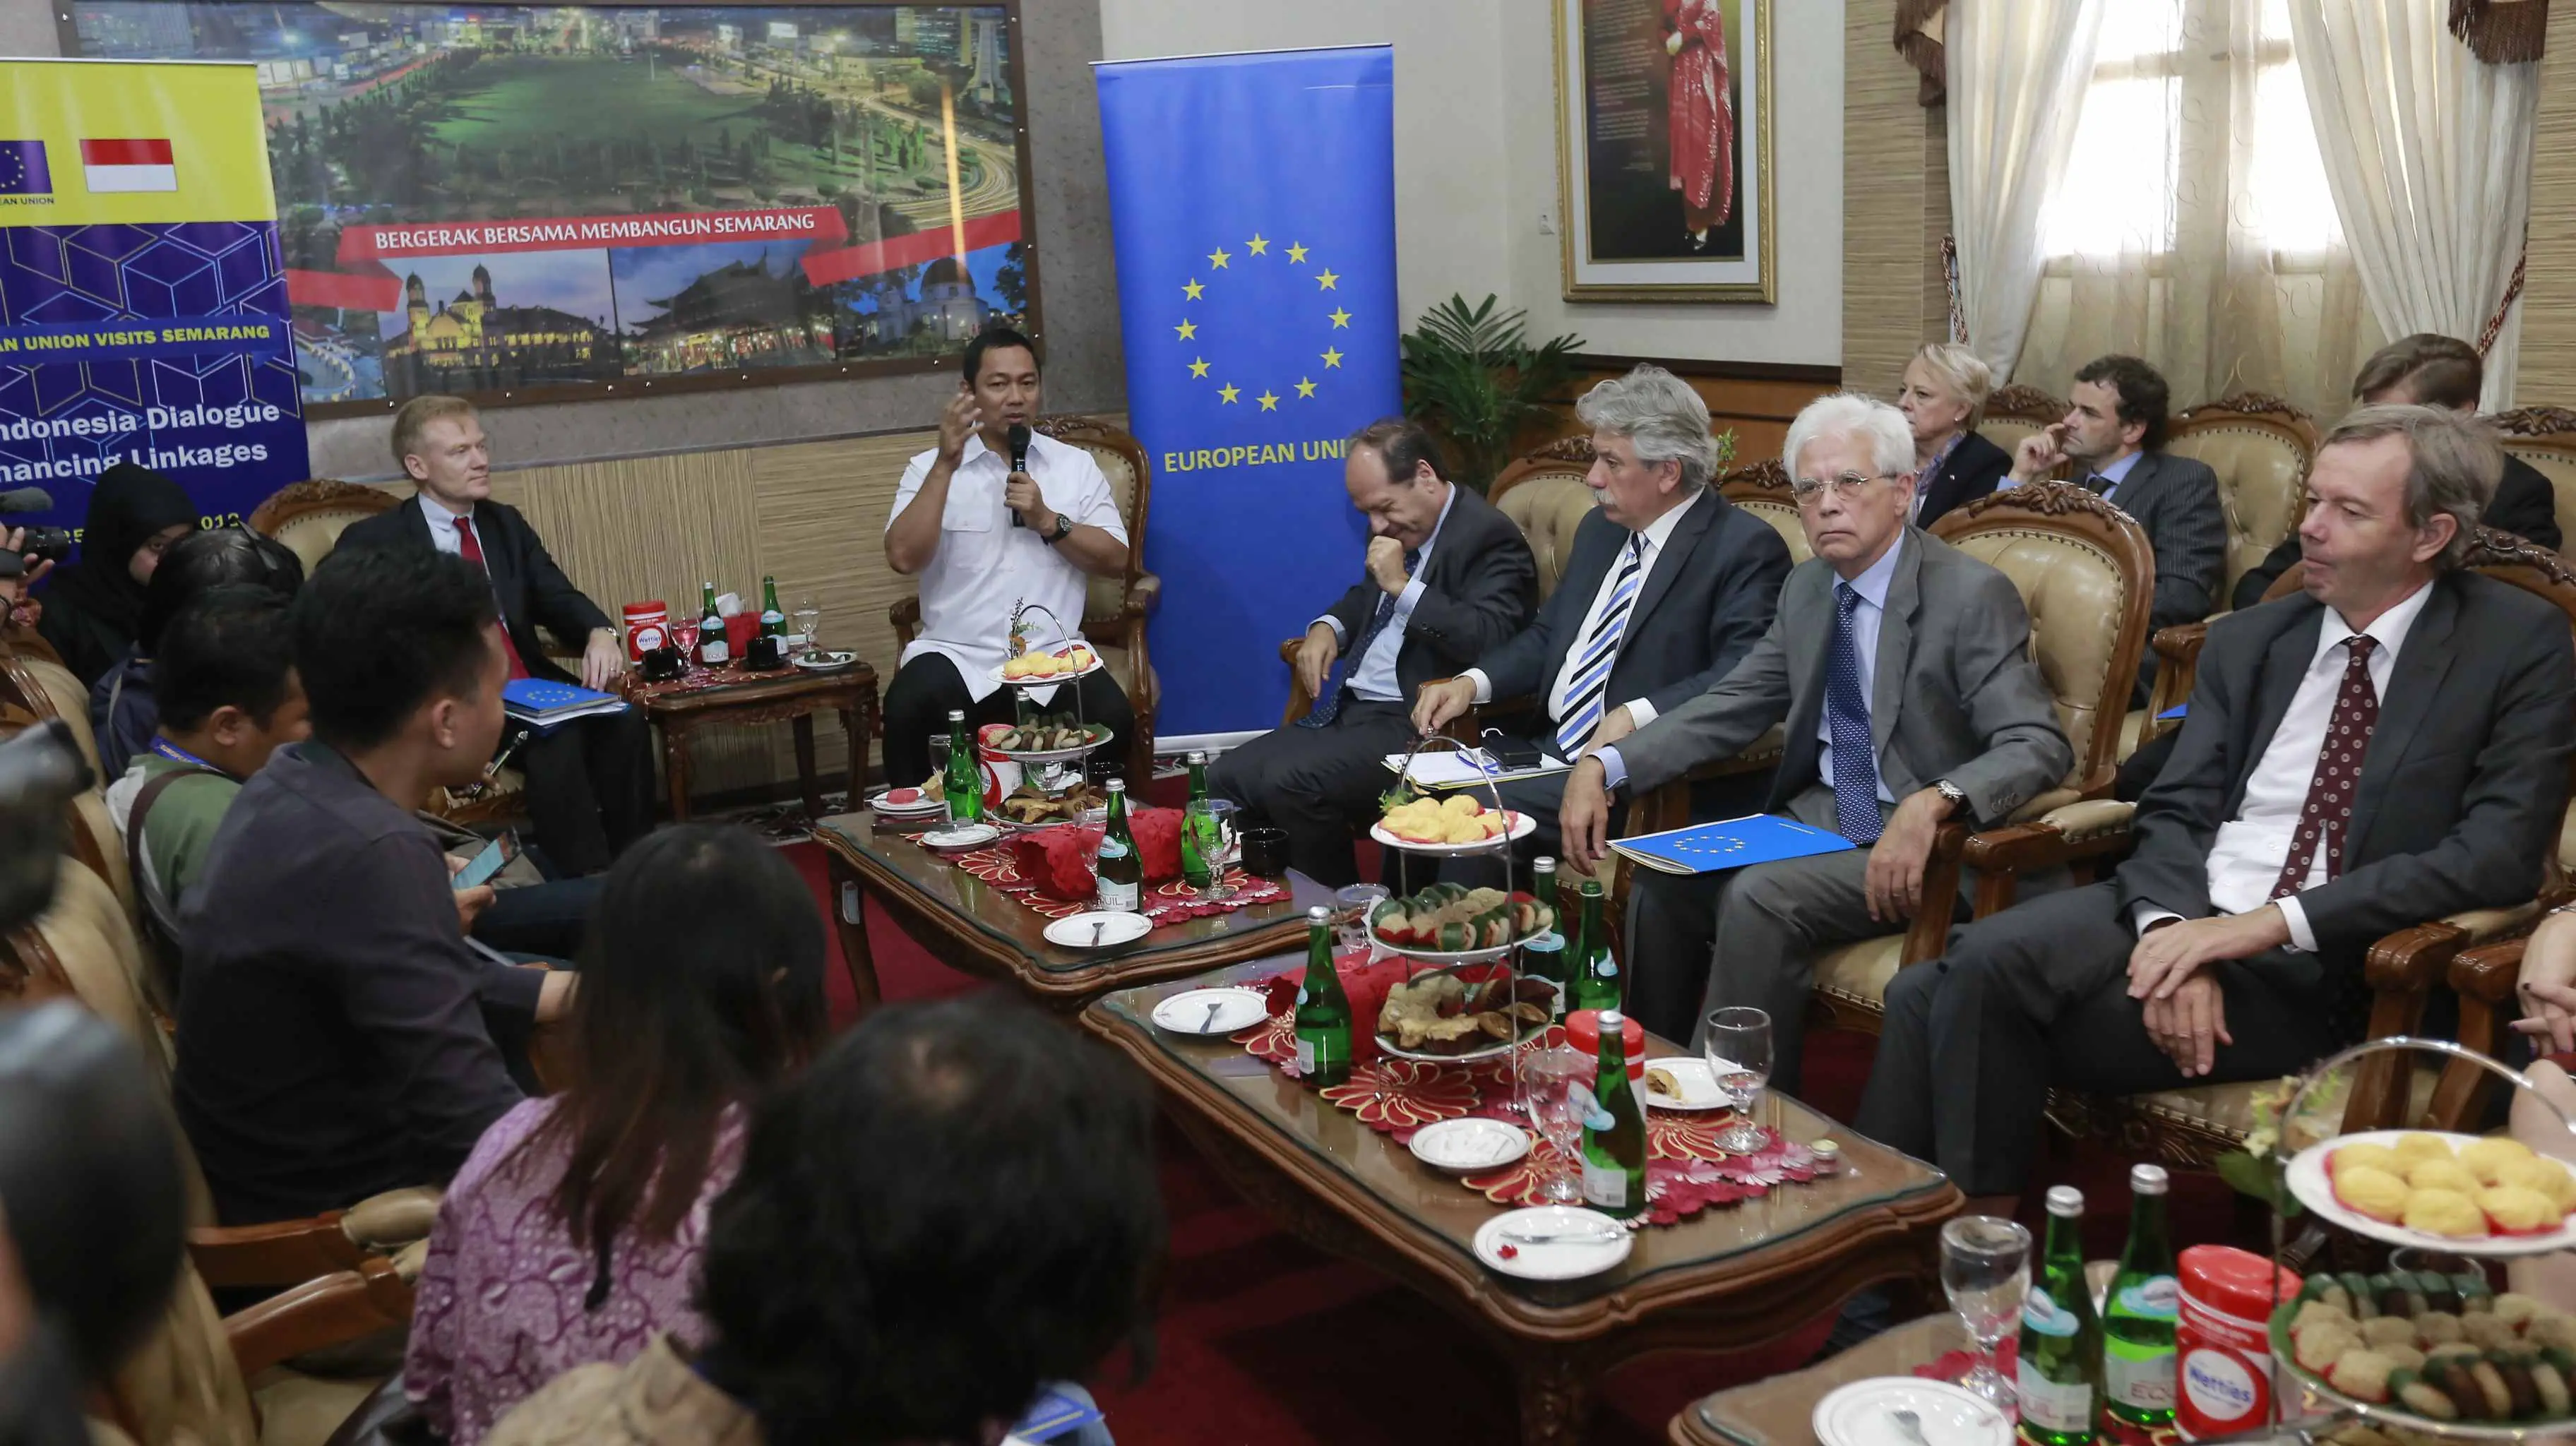 Wali Kota Semarang Hendrar Prihadi memaparkan program Outstanding Semarang di depan 14 perwakilan negara uni Eropa. (foto: /felek wahyu)